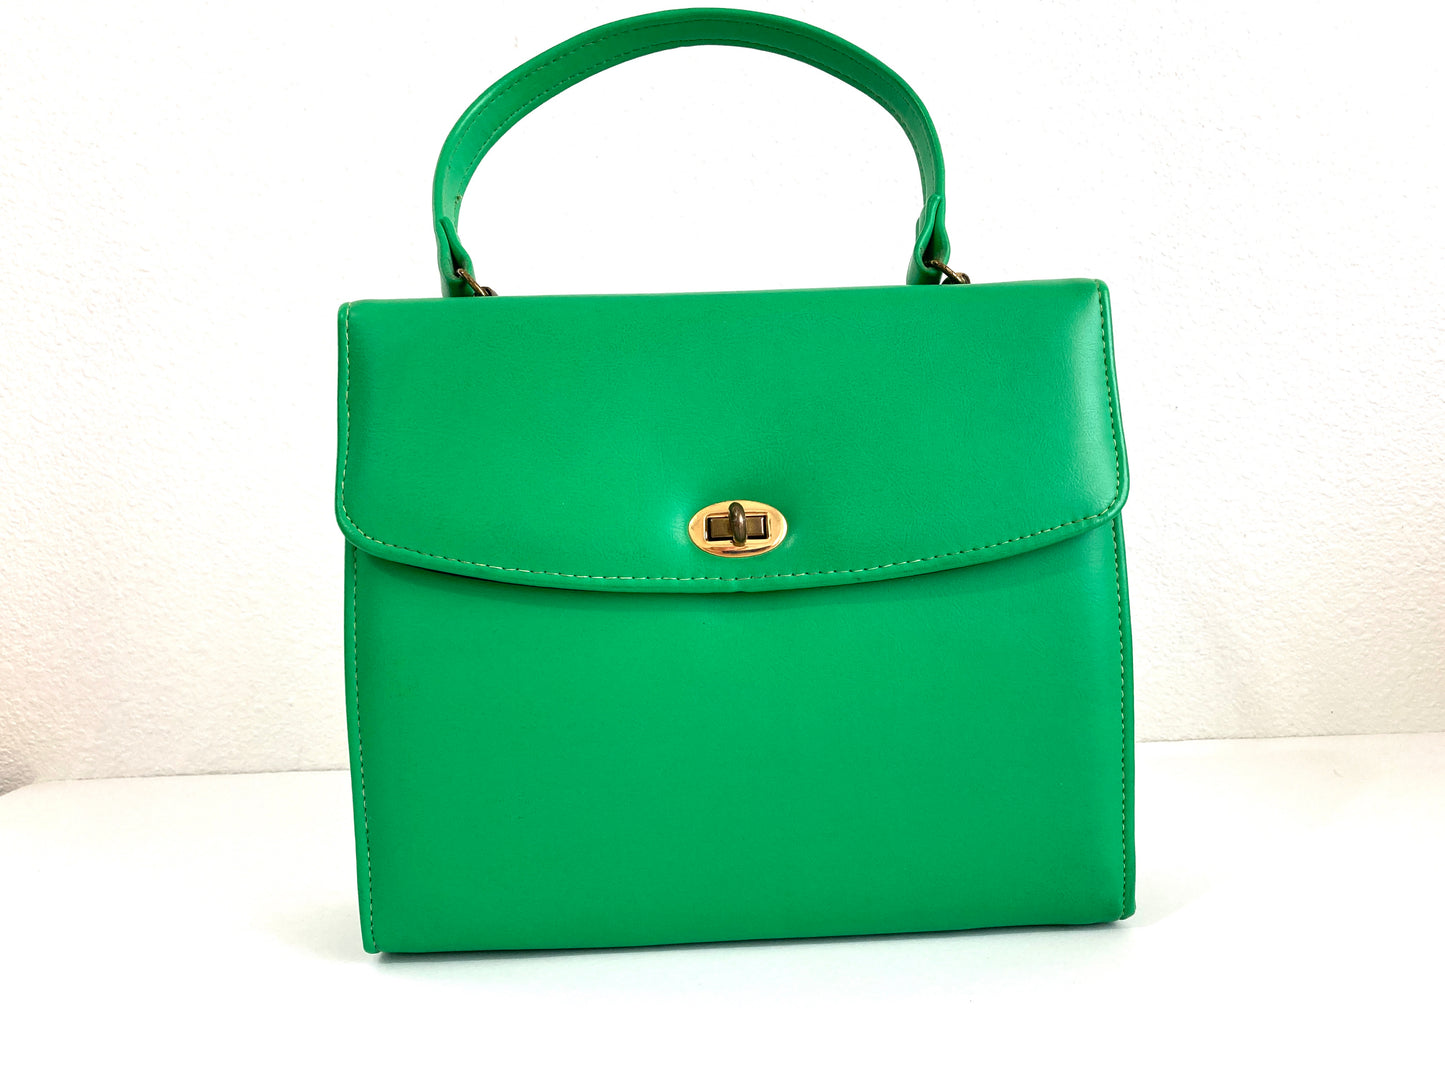 1950s Bright Green Handbag